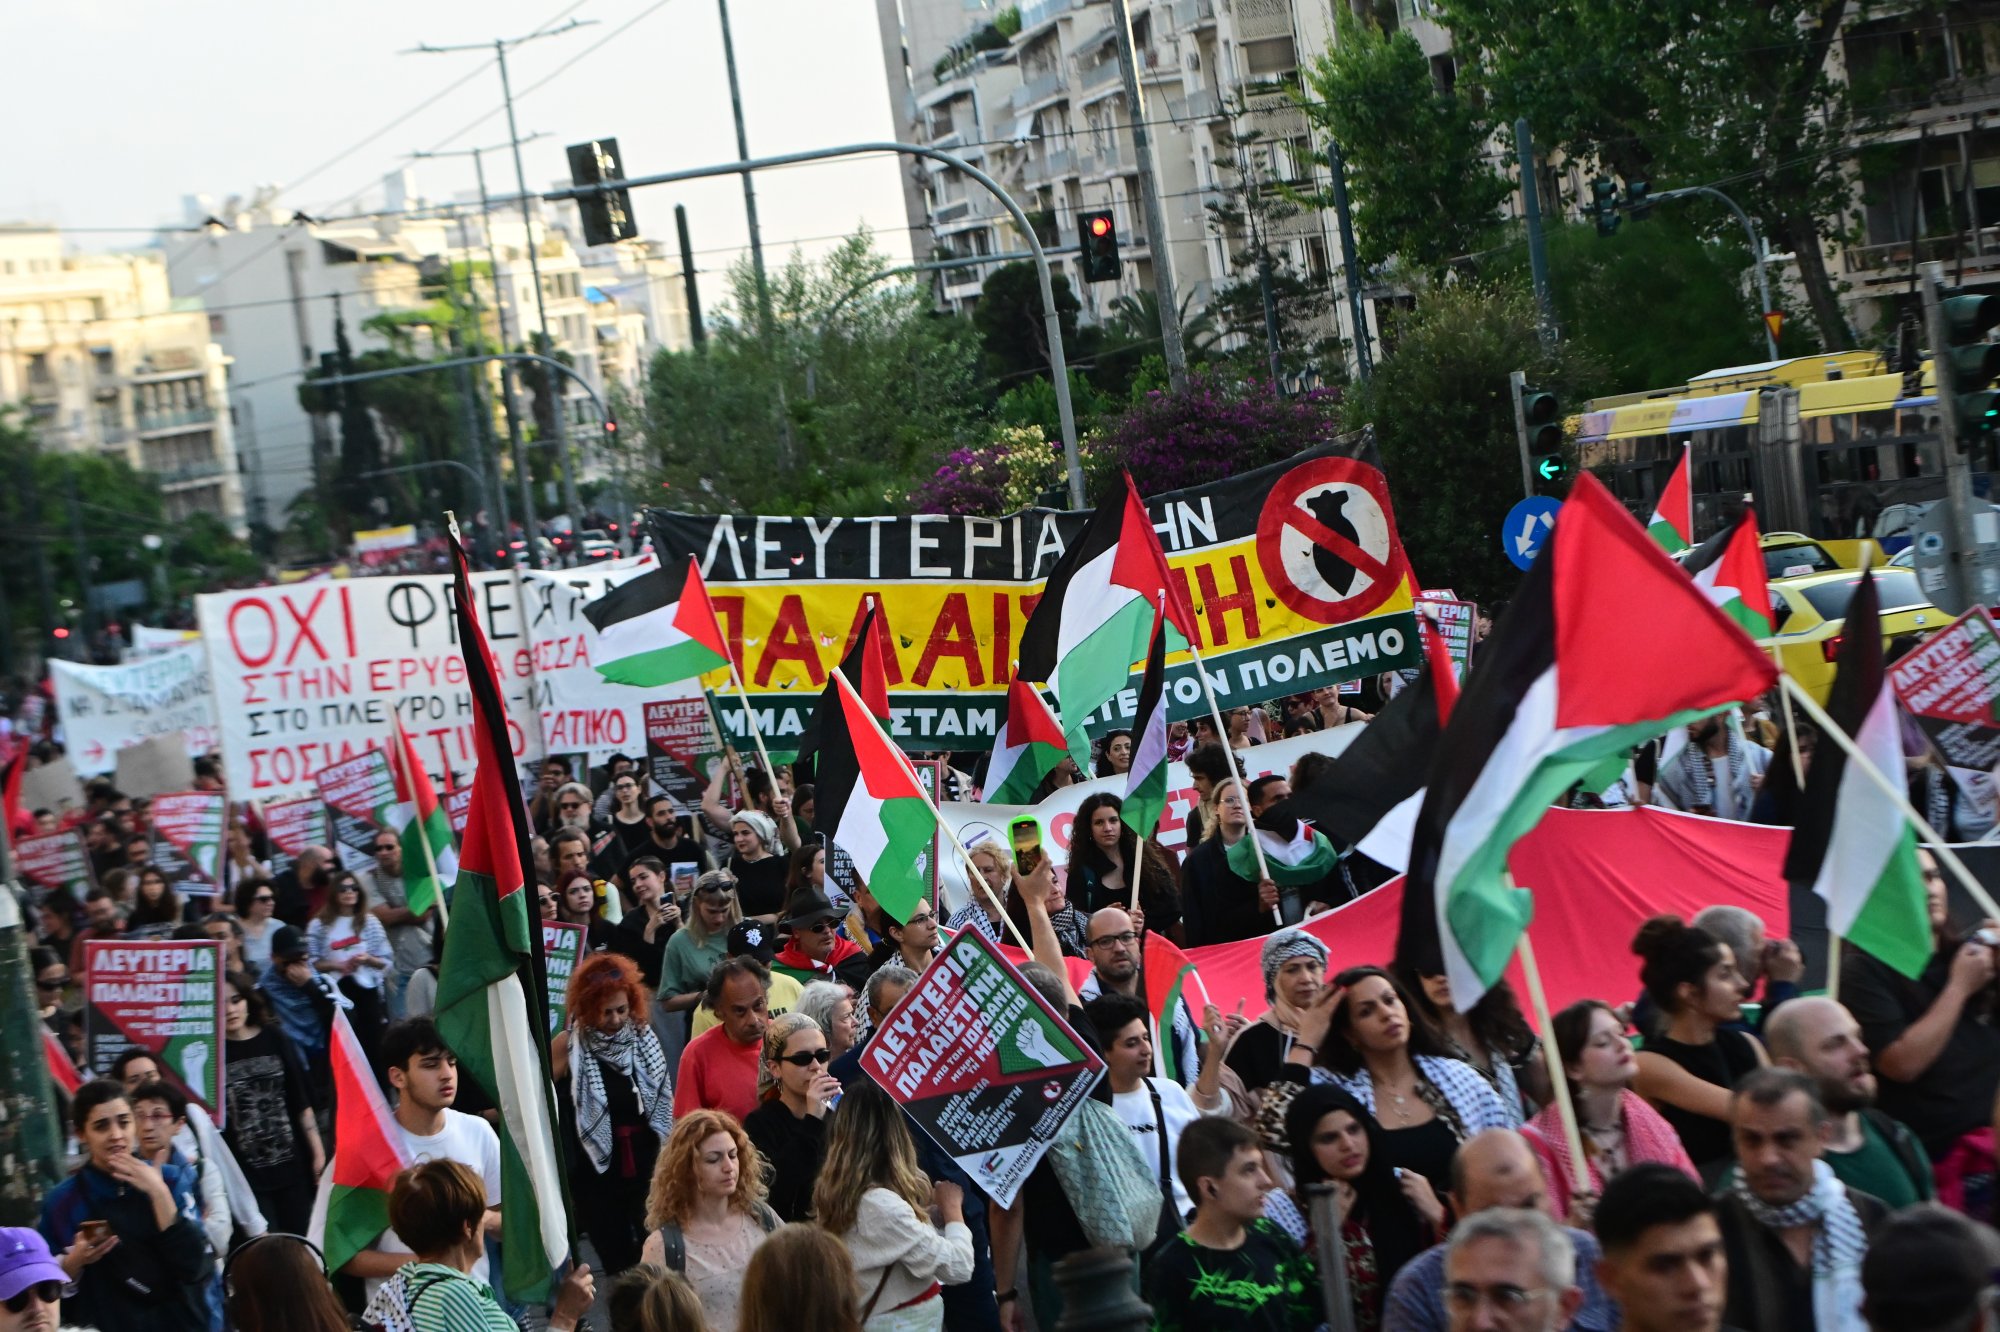 Κυκλοφοριακές ρυθμίσεις στο κέντρο της Αθήνας λόγω πορείας στην πρεσβεία του Ισραήλ